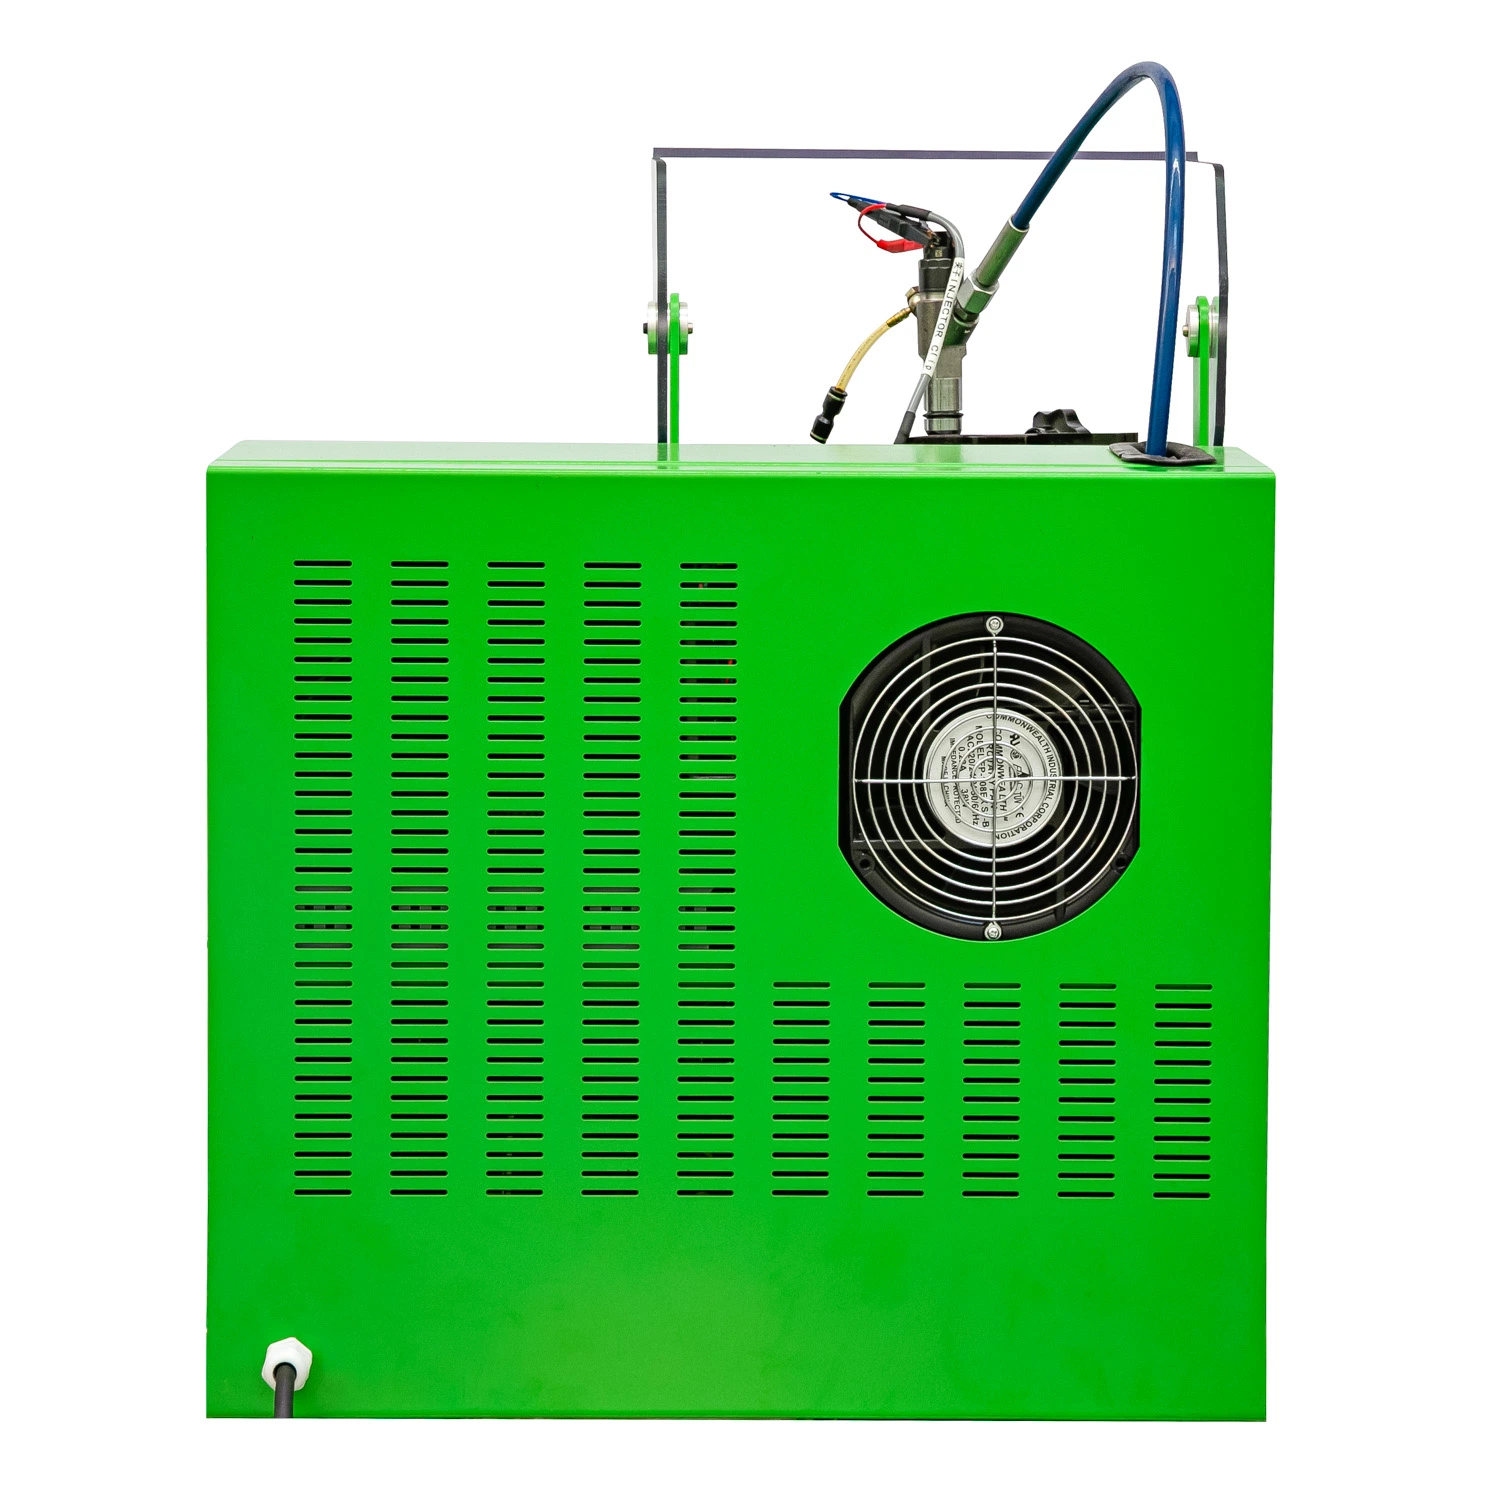 Probador de inyectores diesel de la máquina de diagnóstico de calibración del equipo de pruebas banco de pruebas de soporte de prueba